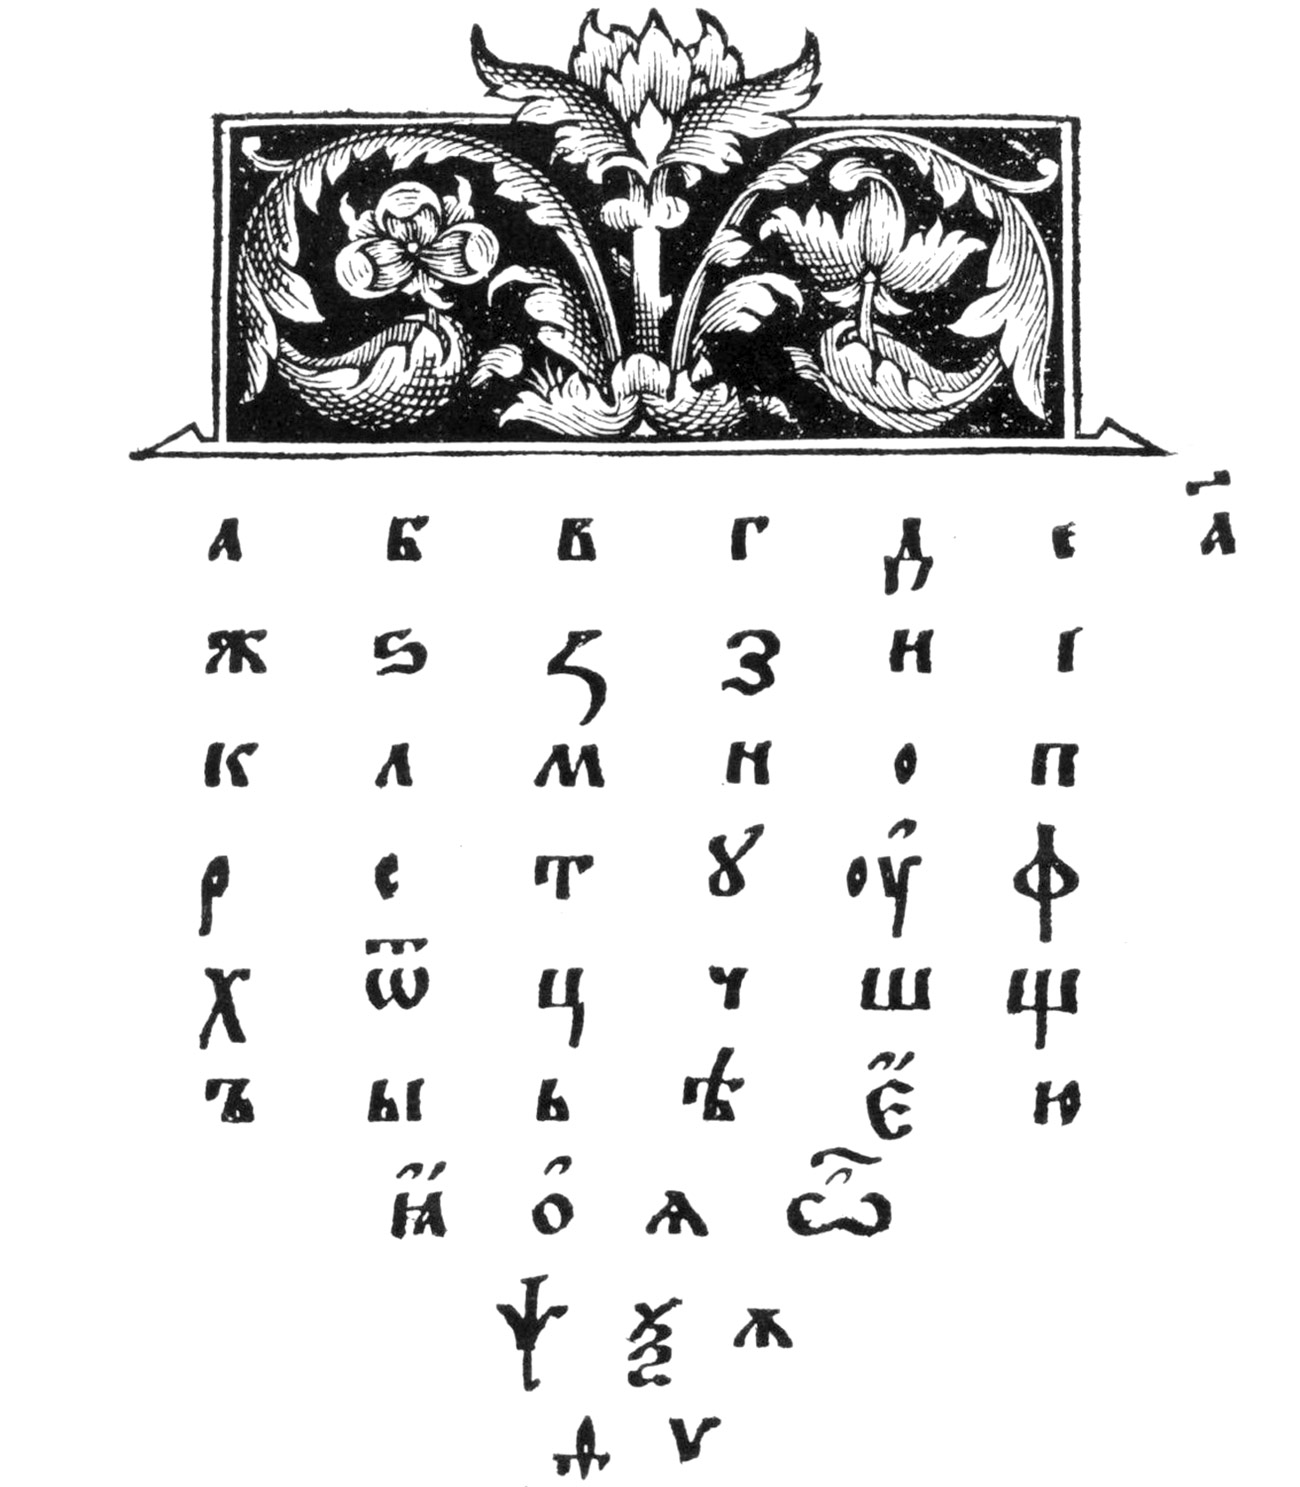 Le lettere dell'alfabeto. Fonte: RARUS'S GALLERY